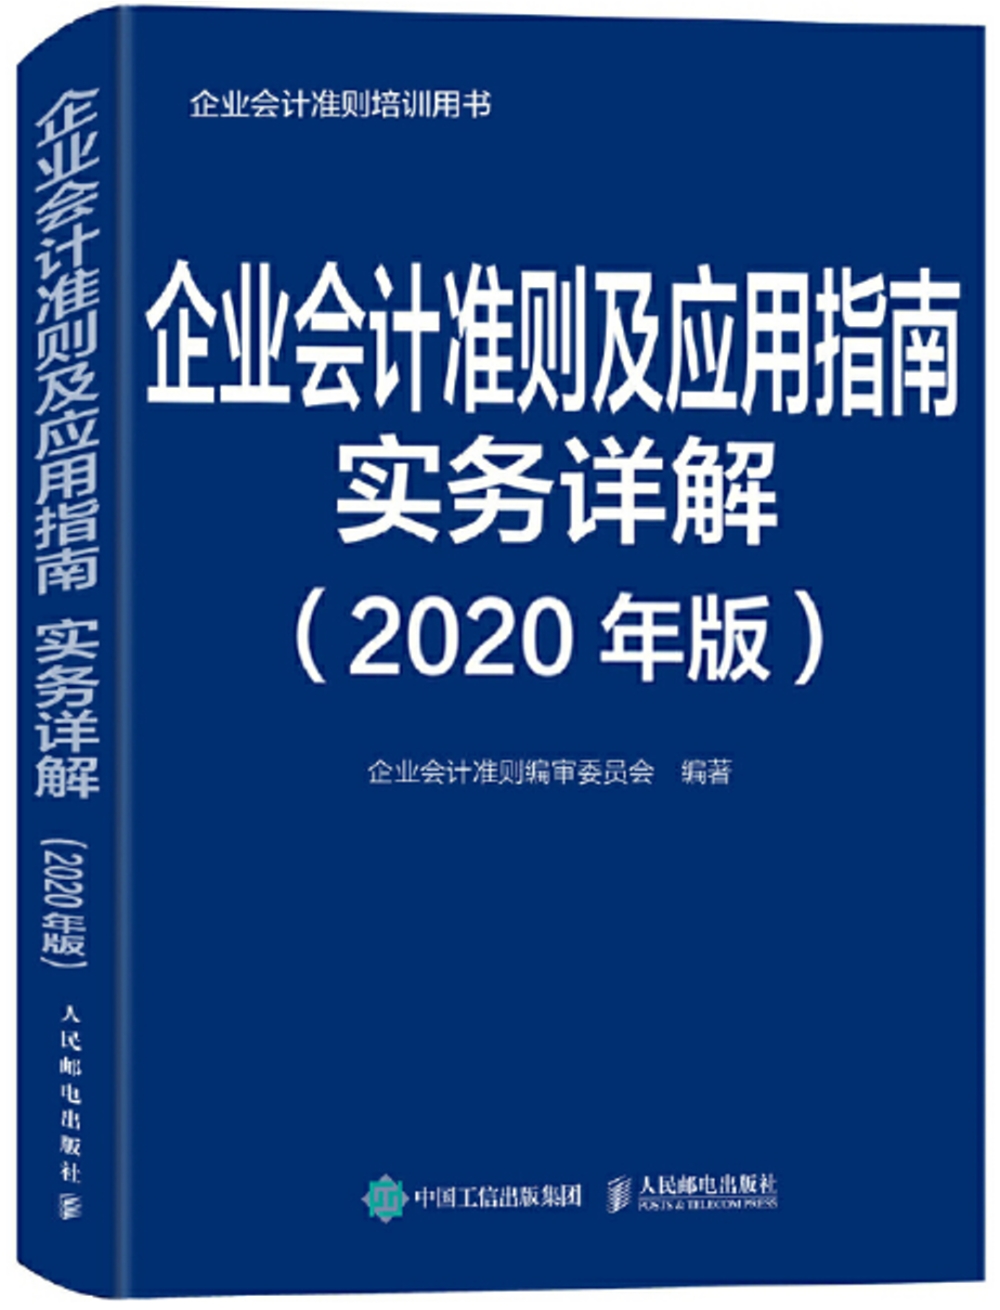 企業會計準則及應用指南實務詳解 2020年版